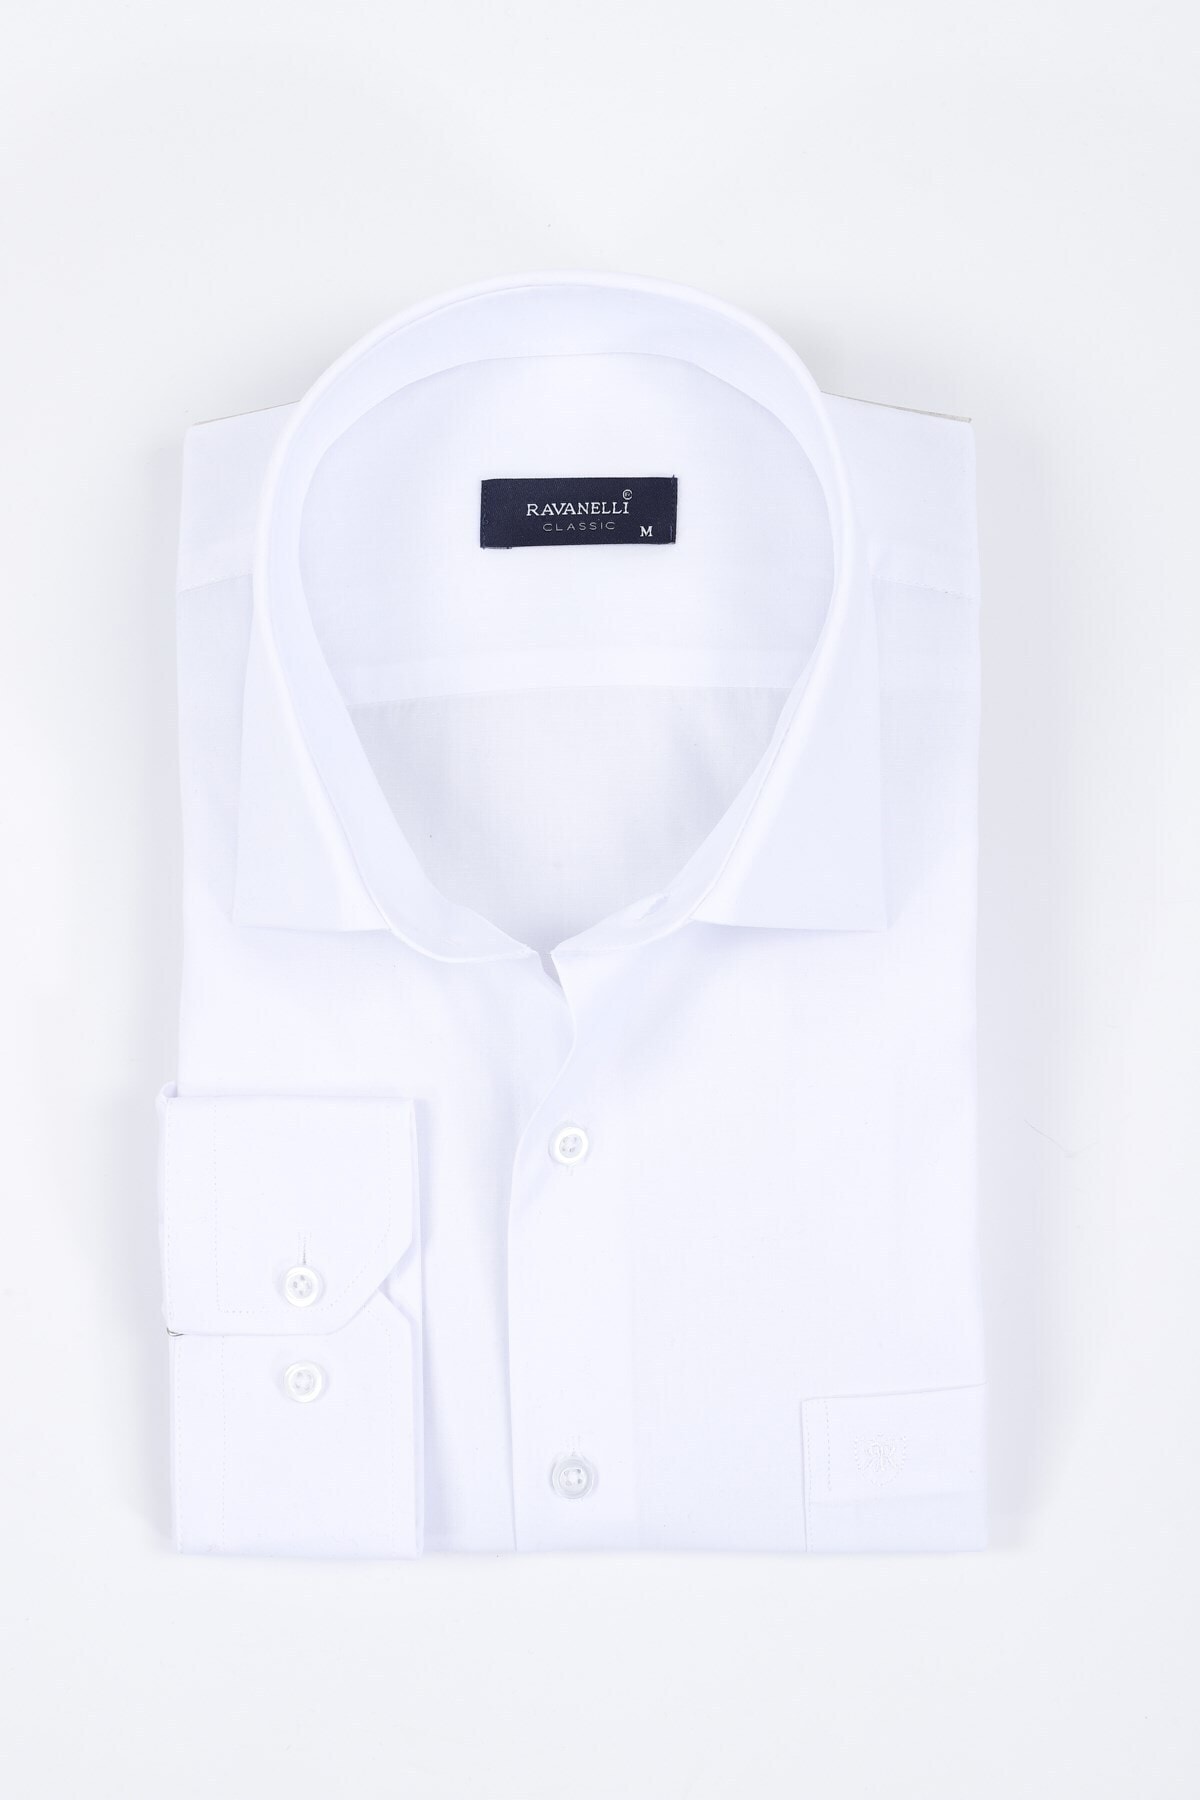 RAVANELLI Beyaz Klasik Gömlek